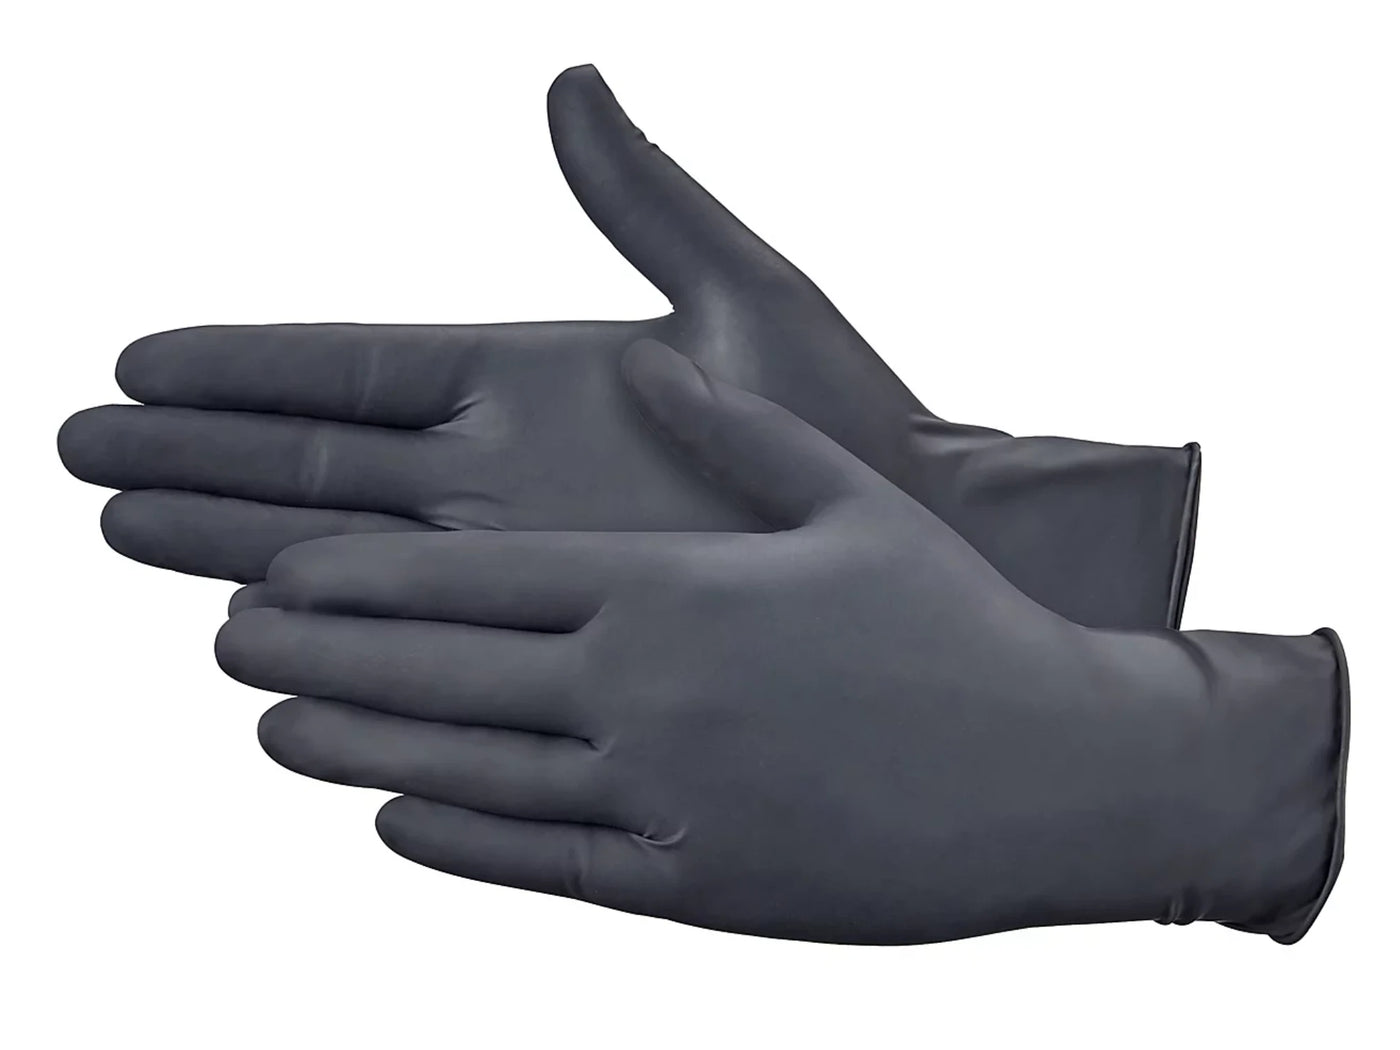 TouchFlex Black Nitrile Gloves - Maple Tattoo Supply